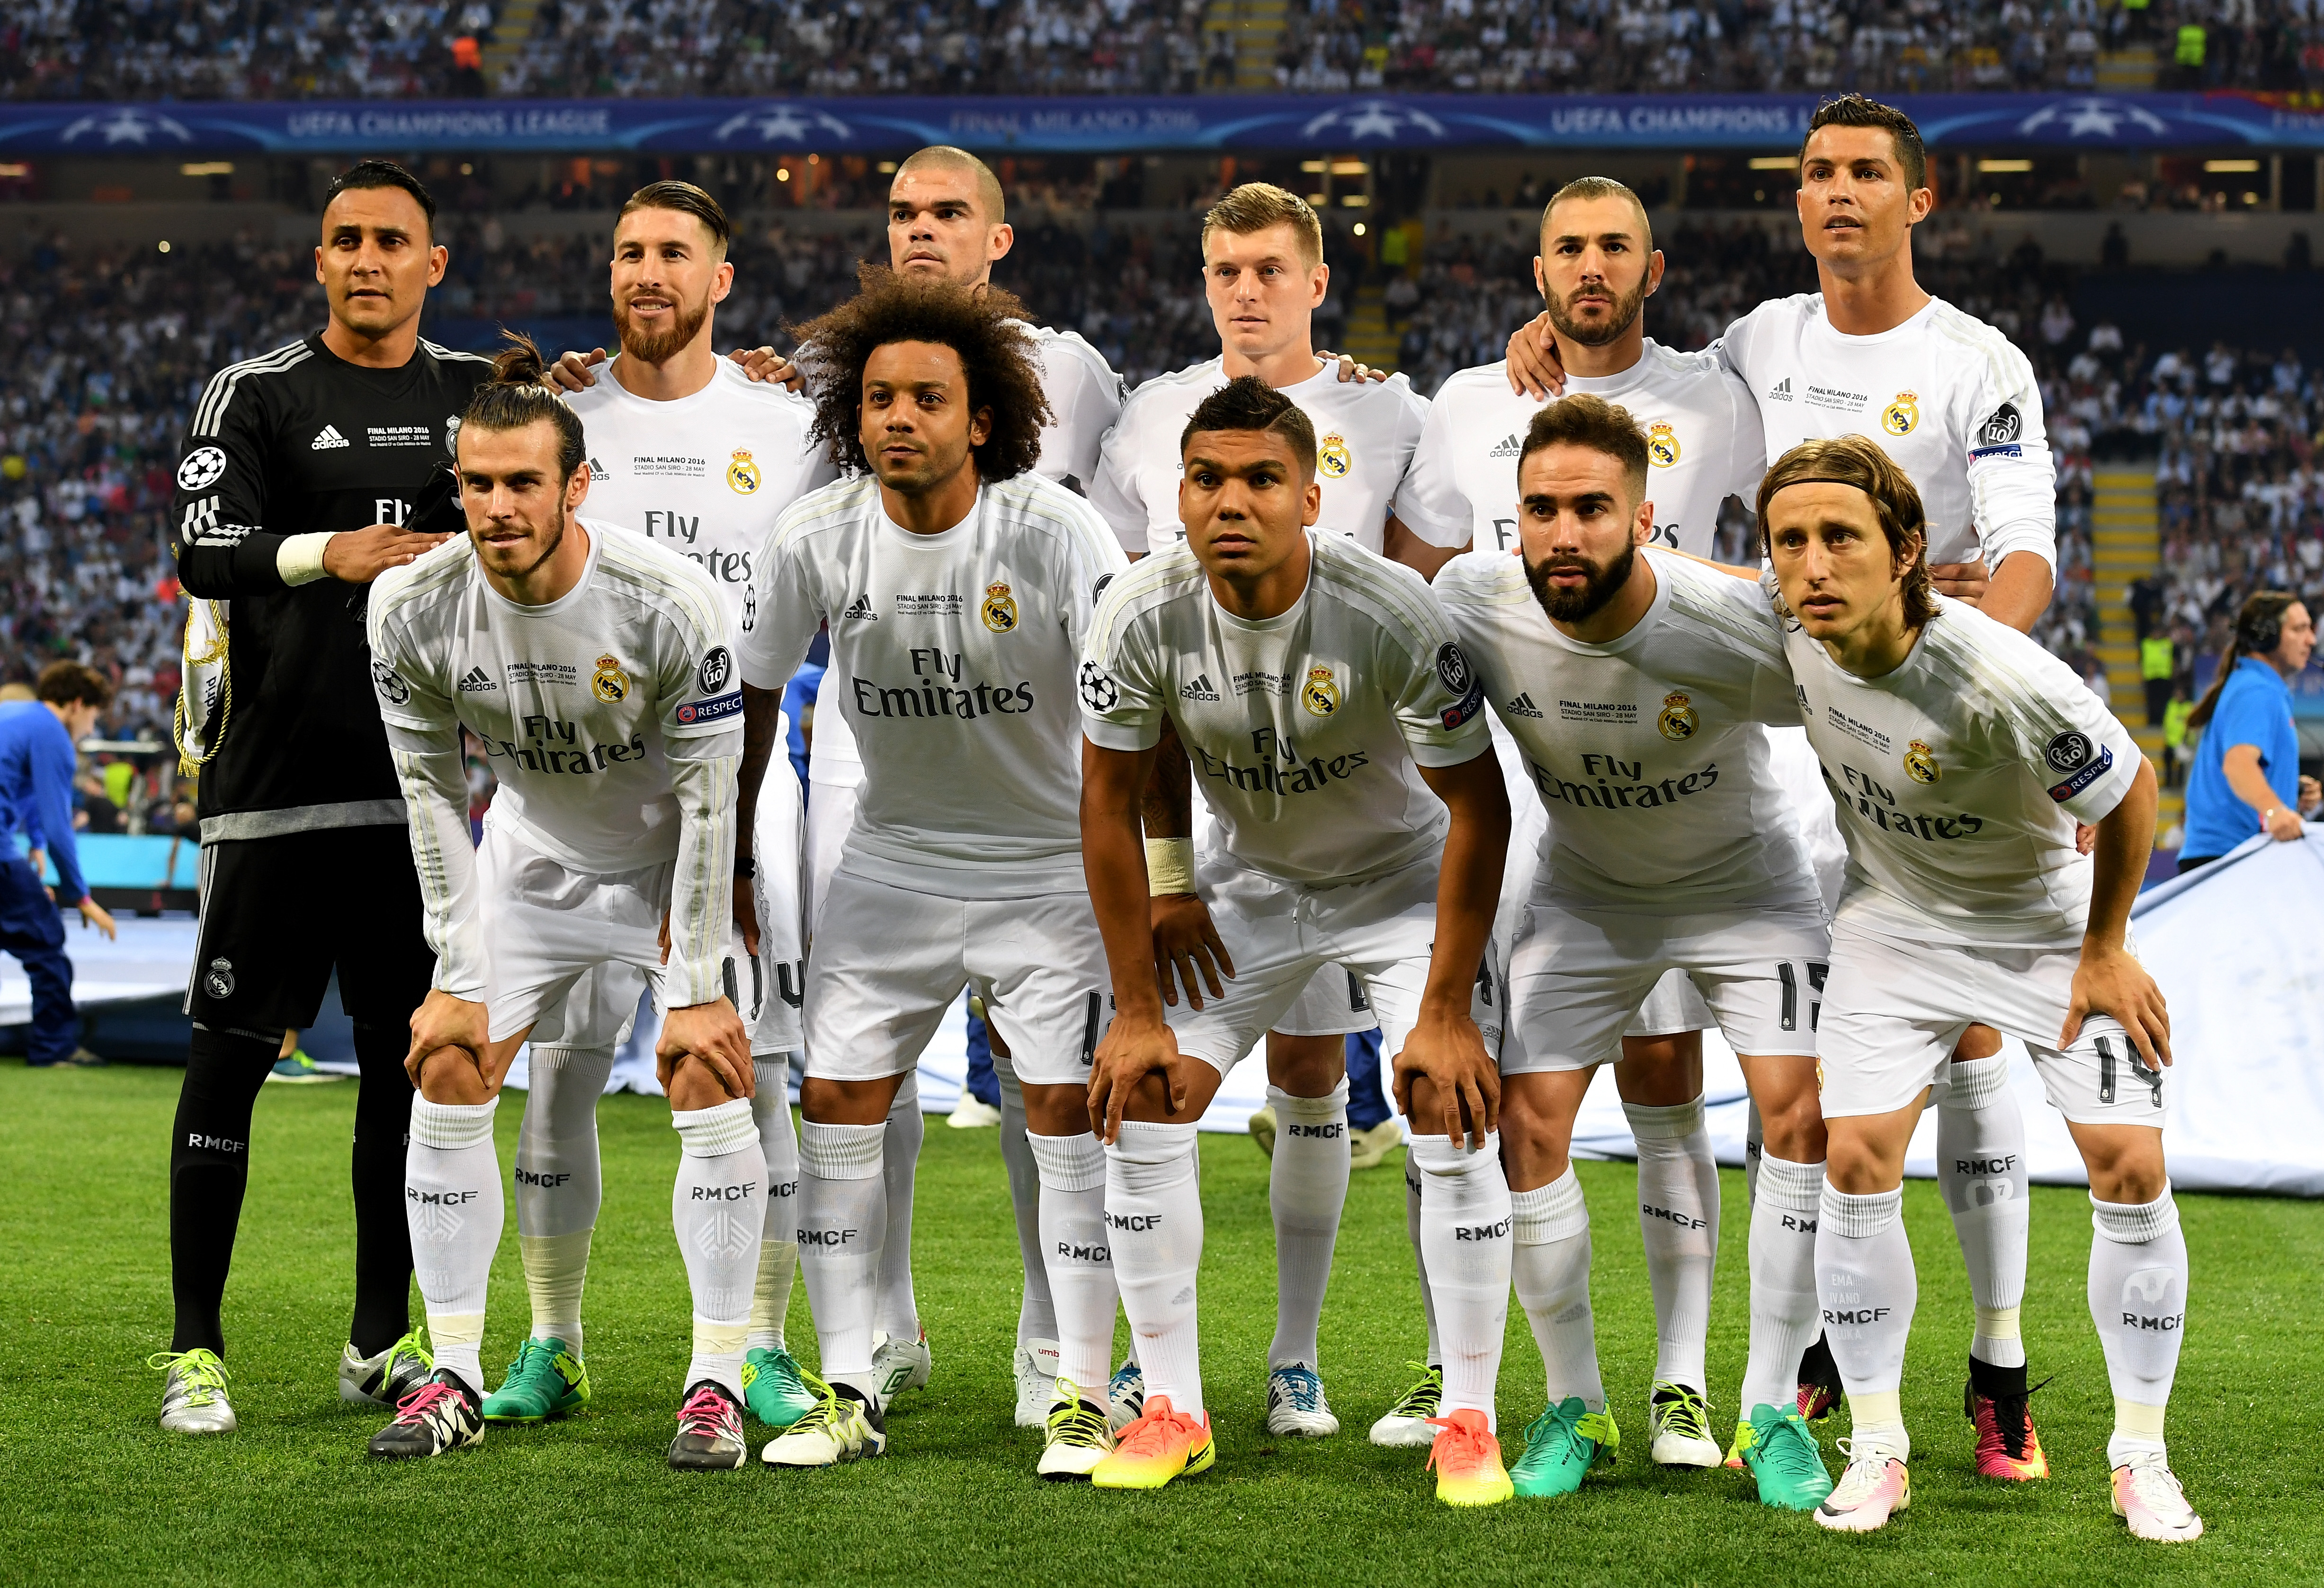 4 июня 2017 год. Команда Реал Мадрид 2016. Команда Реал Мадрид 2015. Фото команды Реал Мадрид 2016. Состав Реал Мадрида 2016 года.